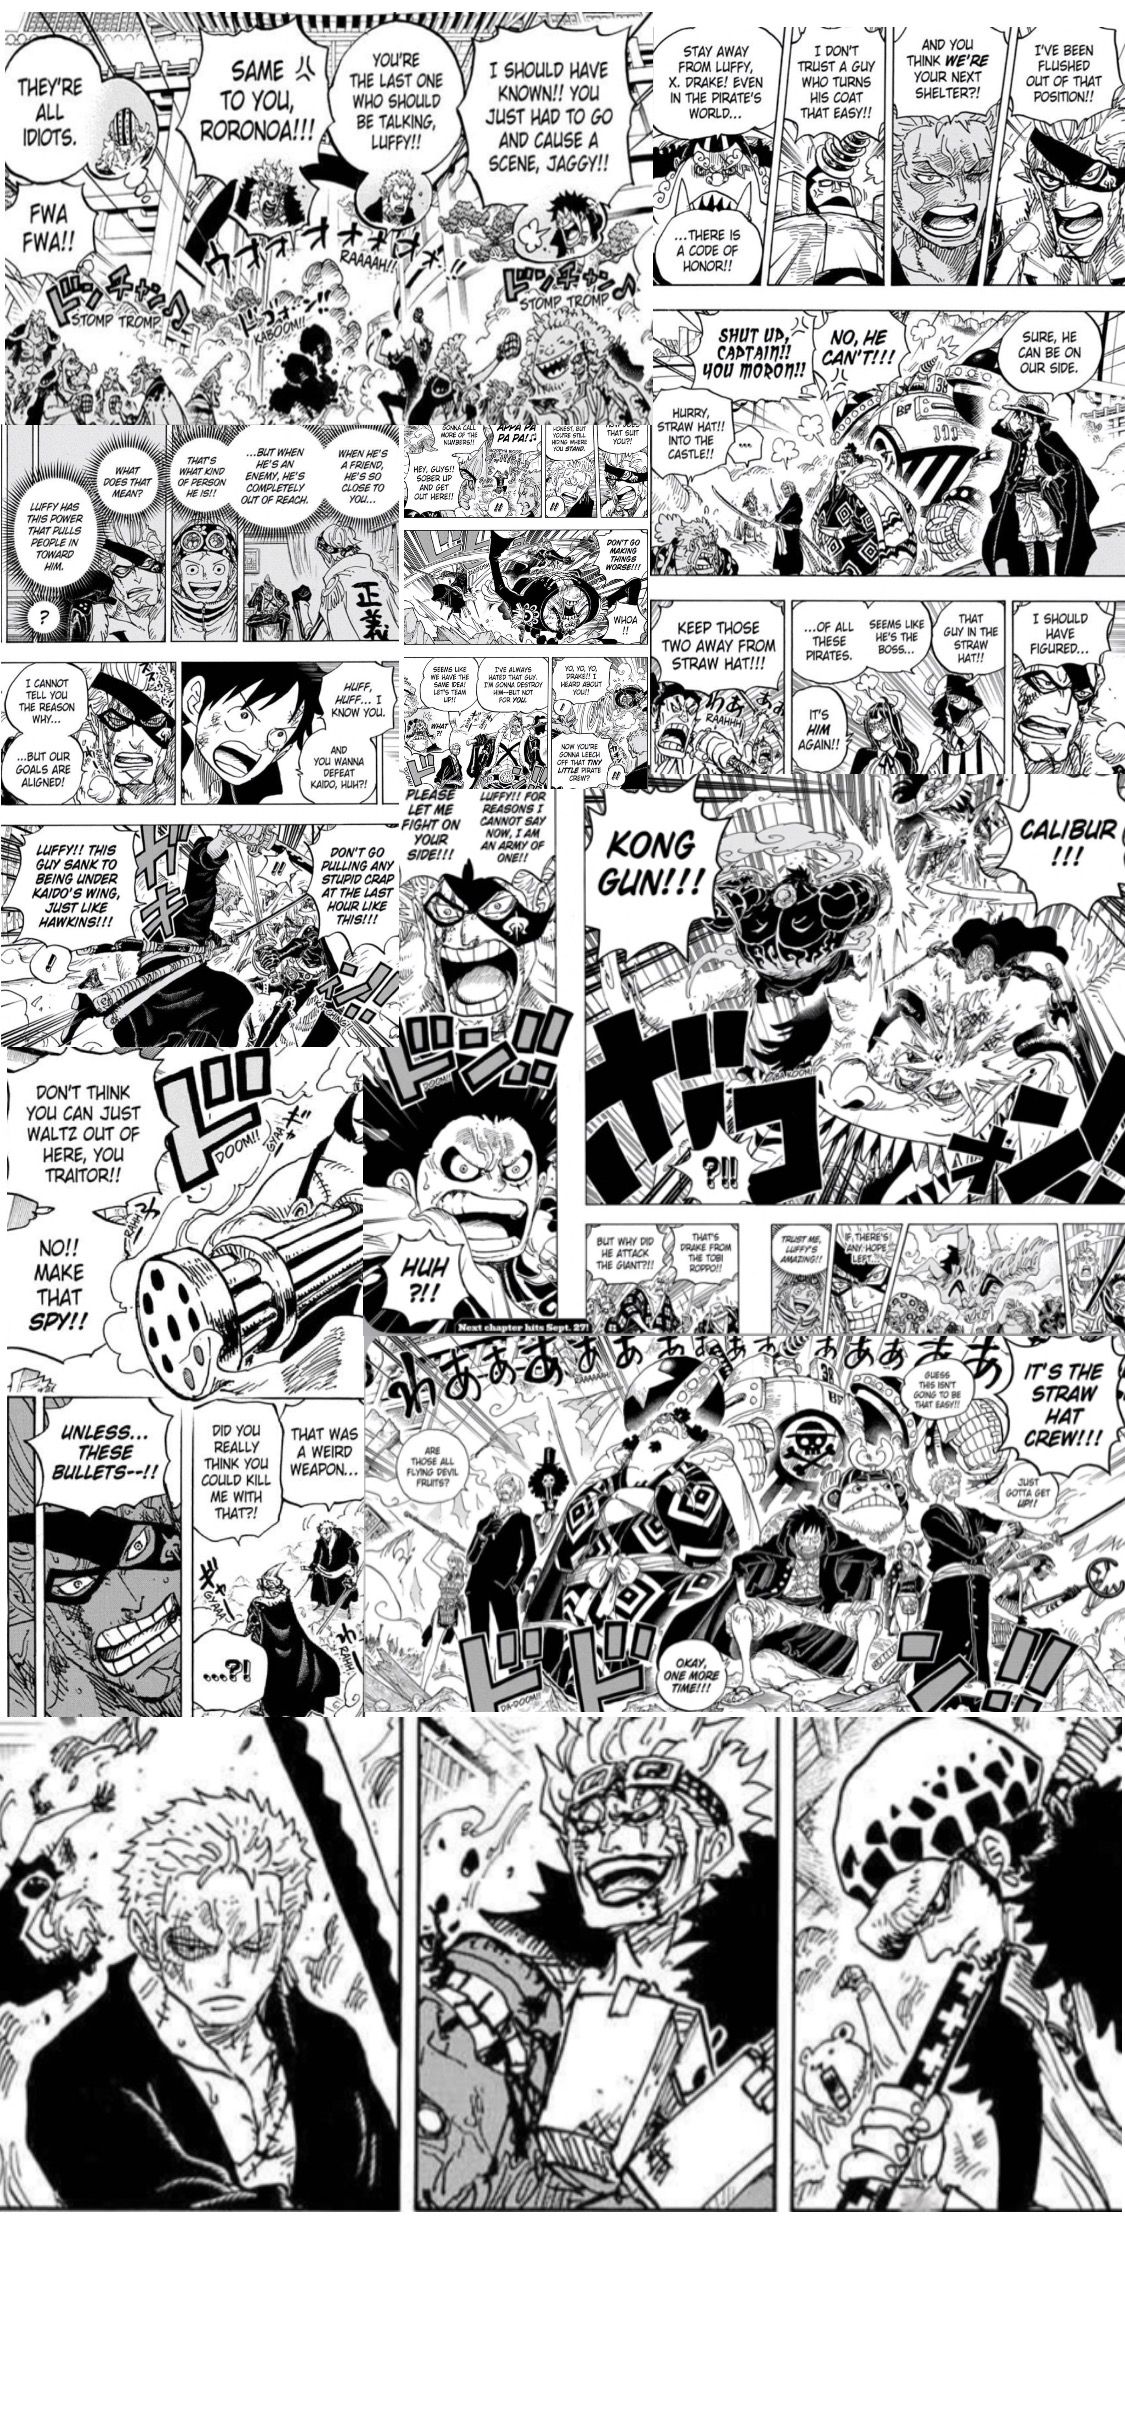 Imageluffy manga wallpaper 8 HD à telecharger gratuitement sur fond-ecran-anime.fr en HD 2436 x 1125